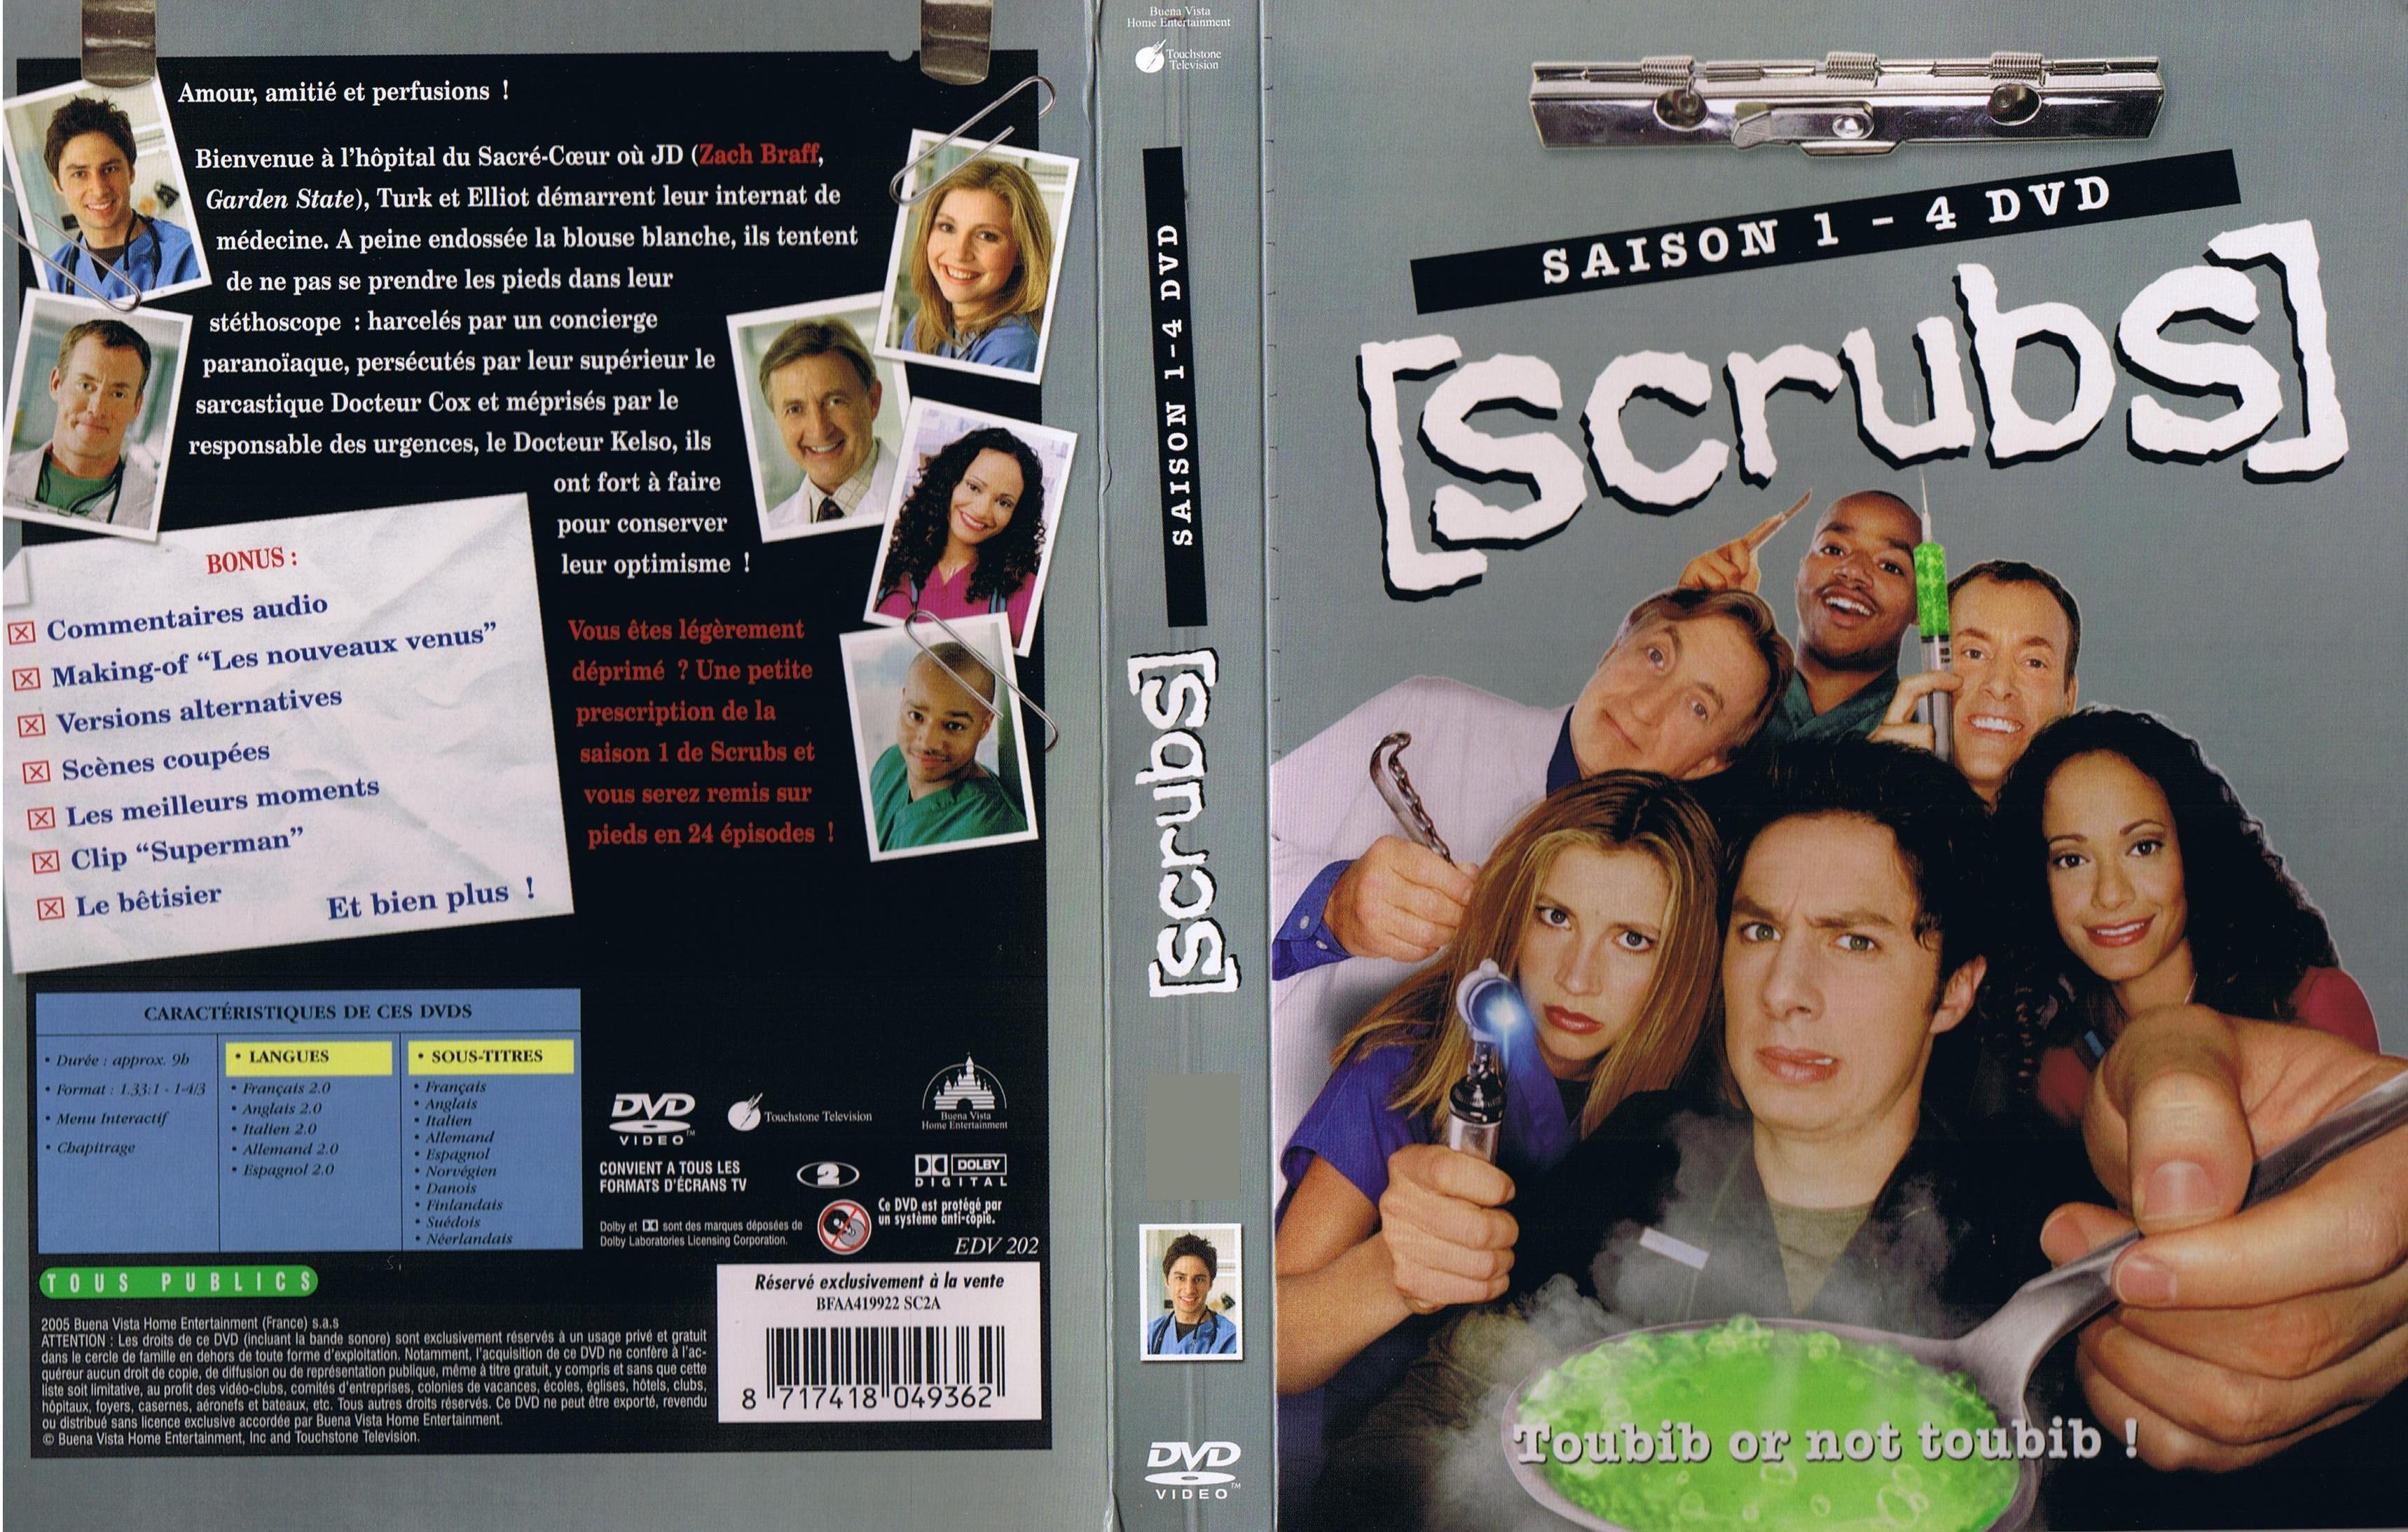 Jaquette DVD Scrubs saison 1 COFFRET